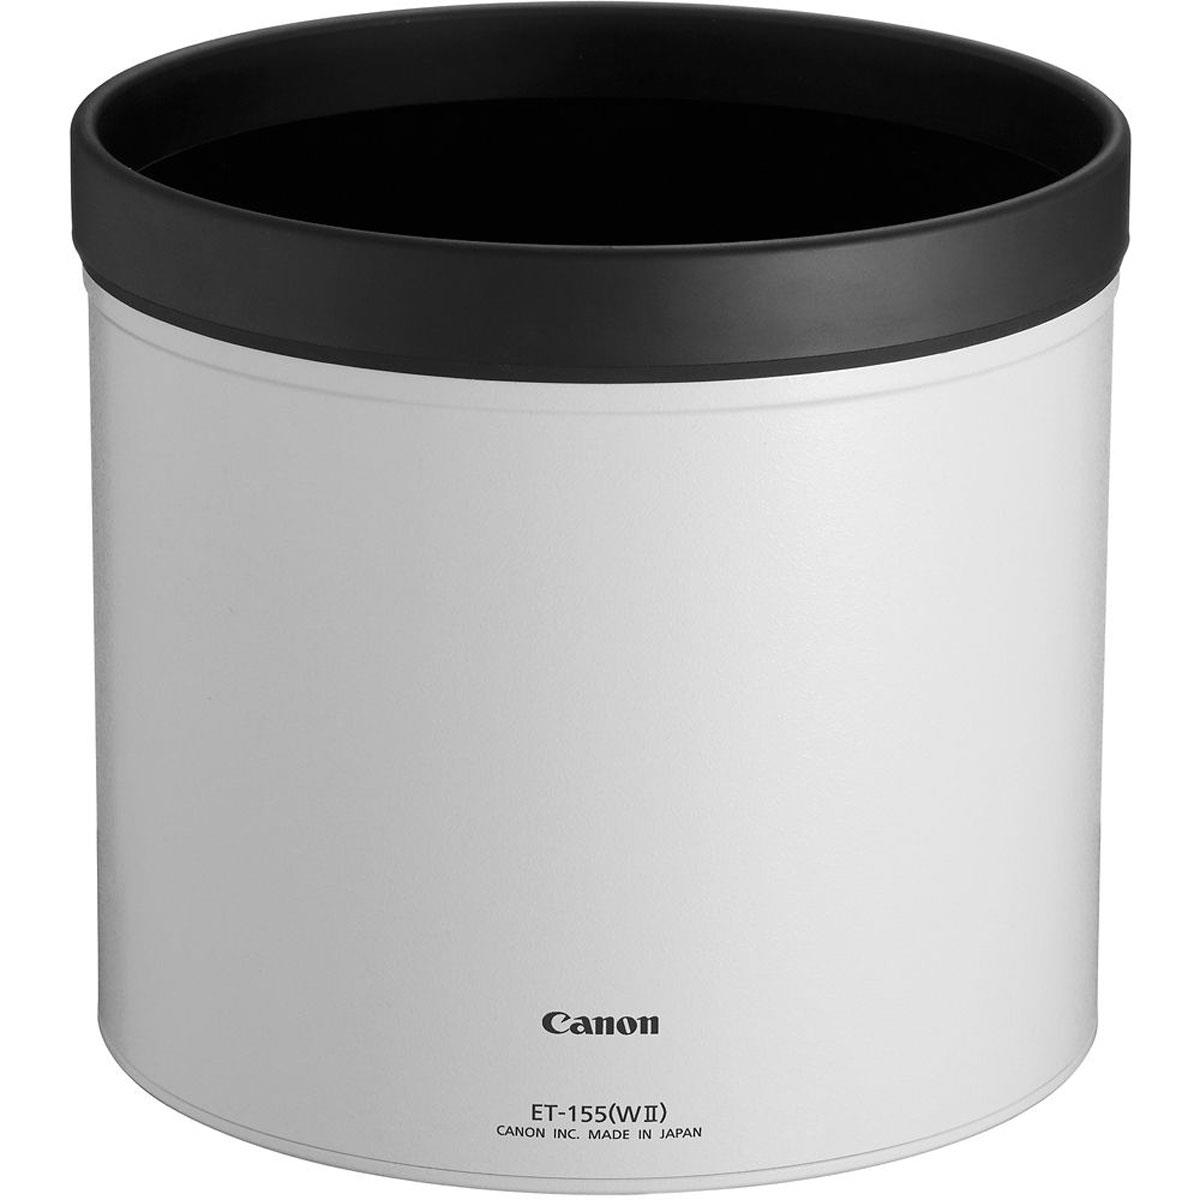 Image of Canon Lens Hood ET-155 (WII) - for EF 400mm f/2.8L IS II USM lens